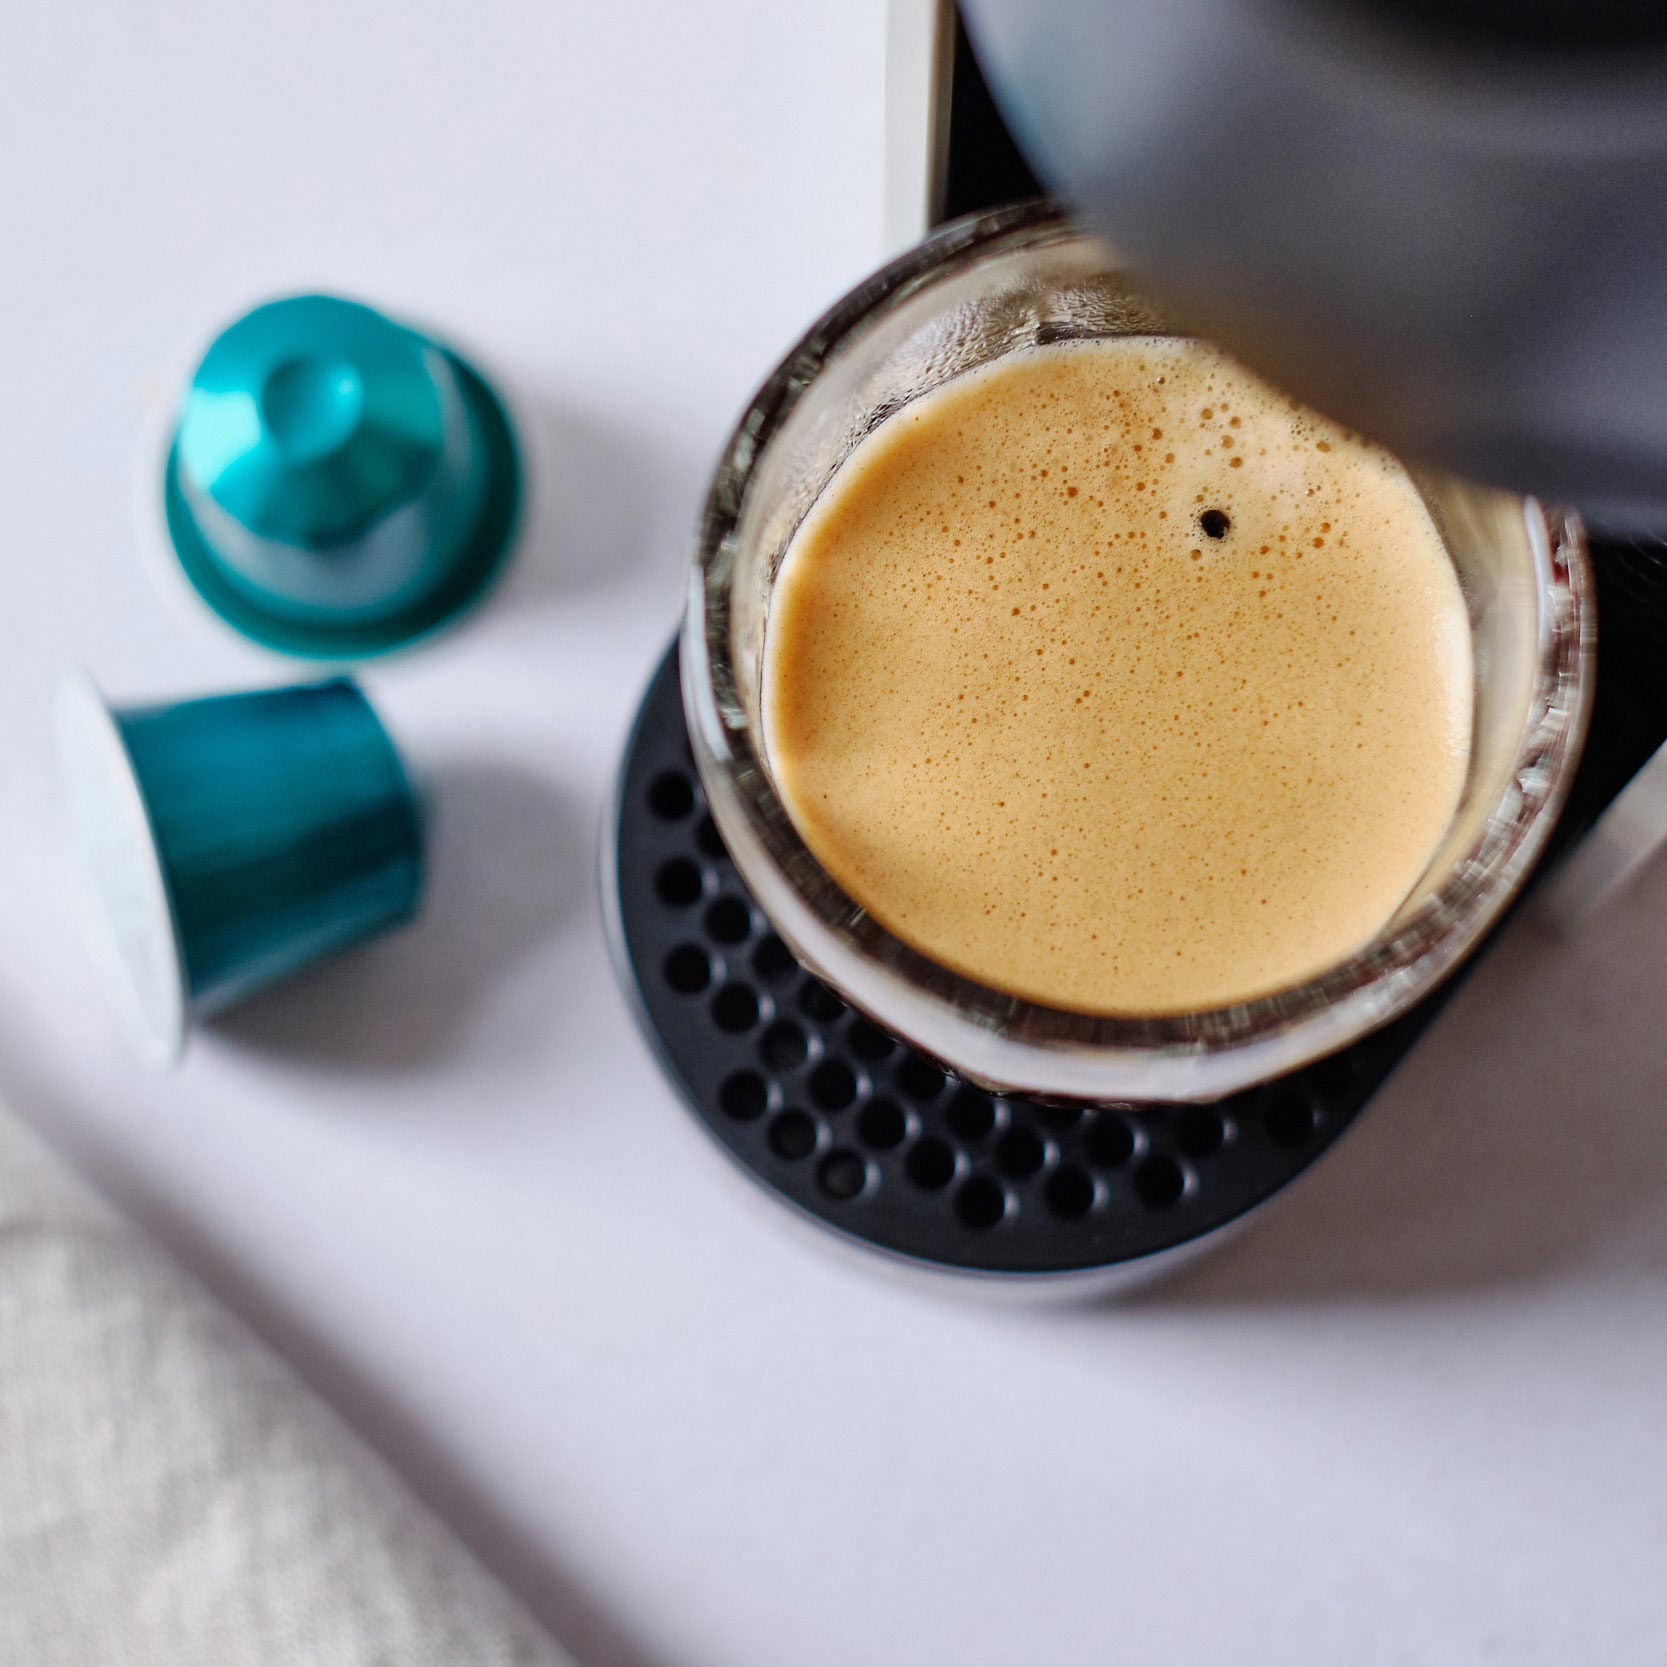 CRU KAFE 英國原裝有機咖啡膠囊-低咖啡因 10入(Nespresso適用) - Decaf